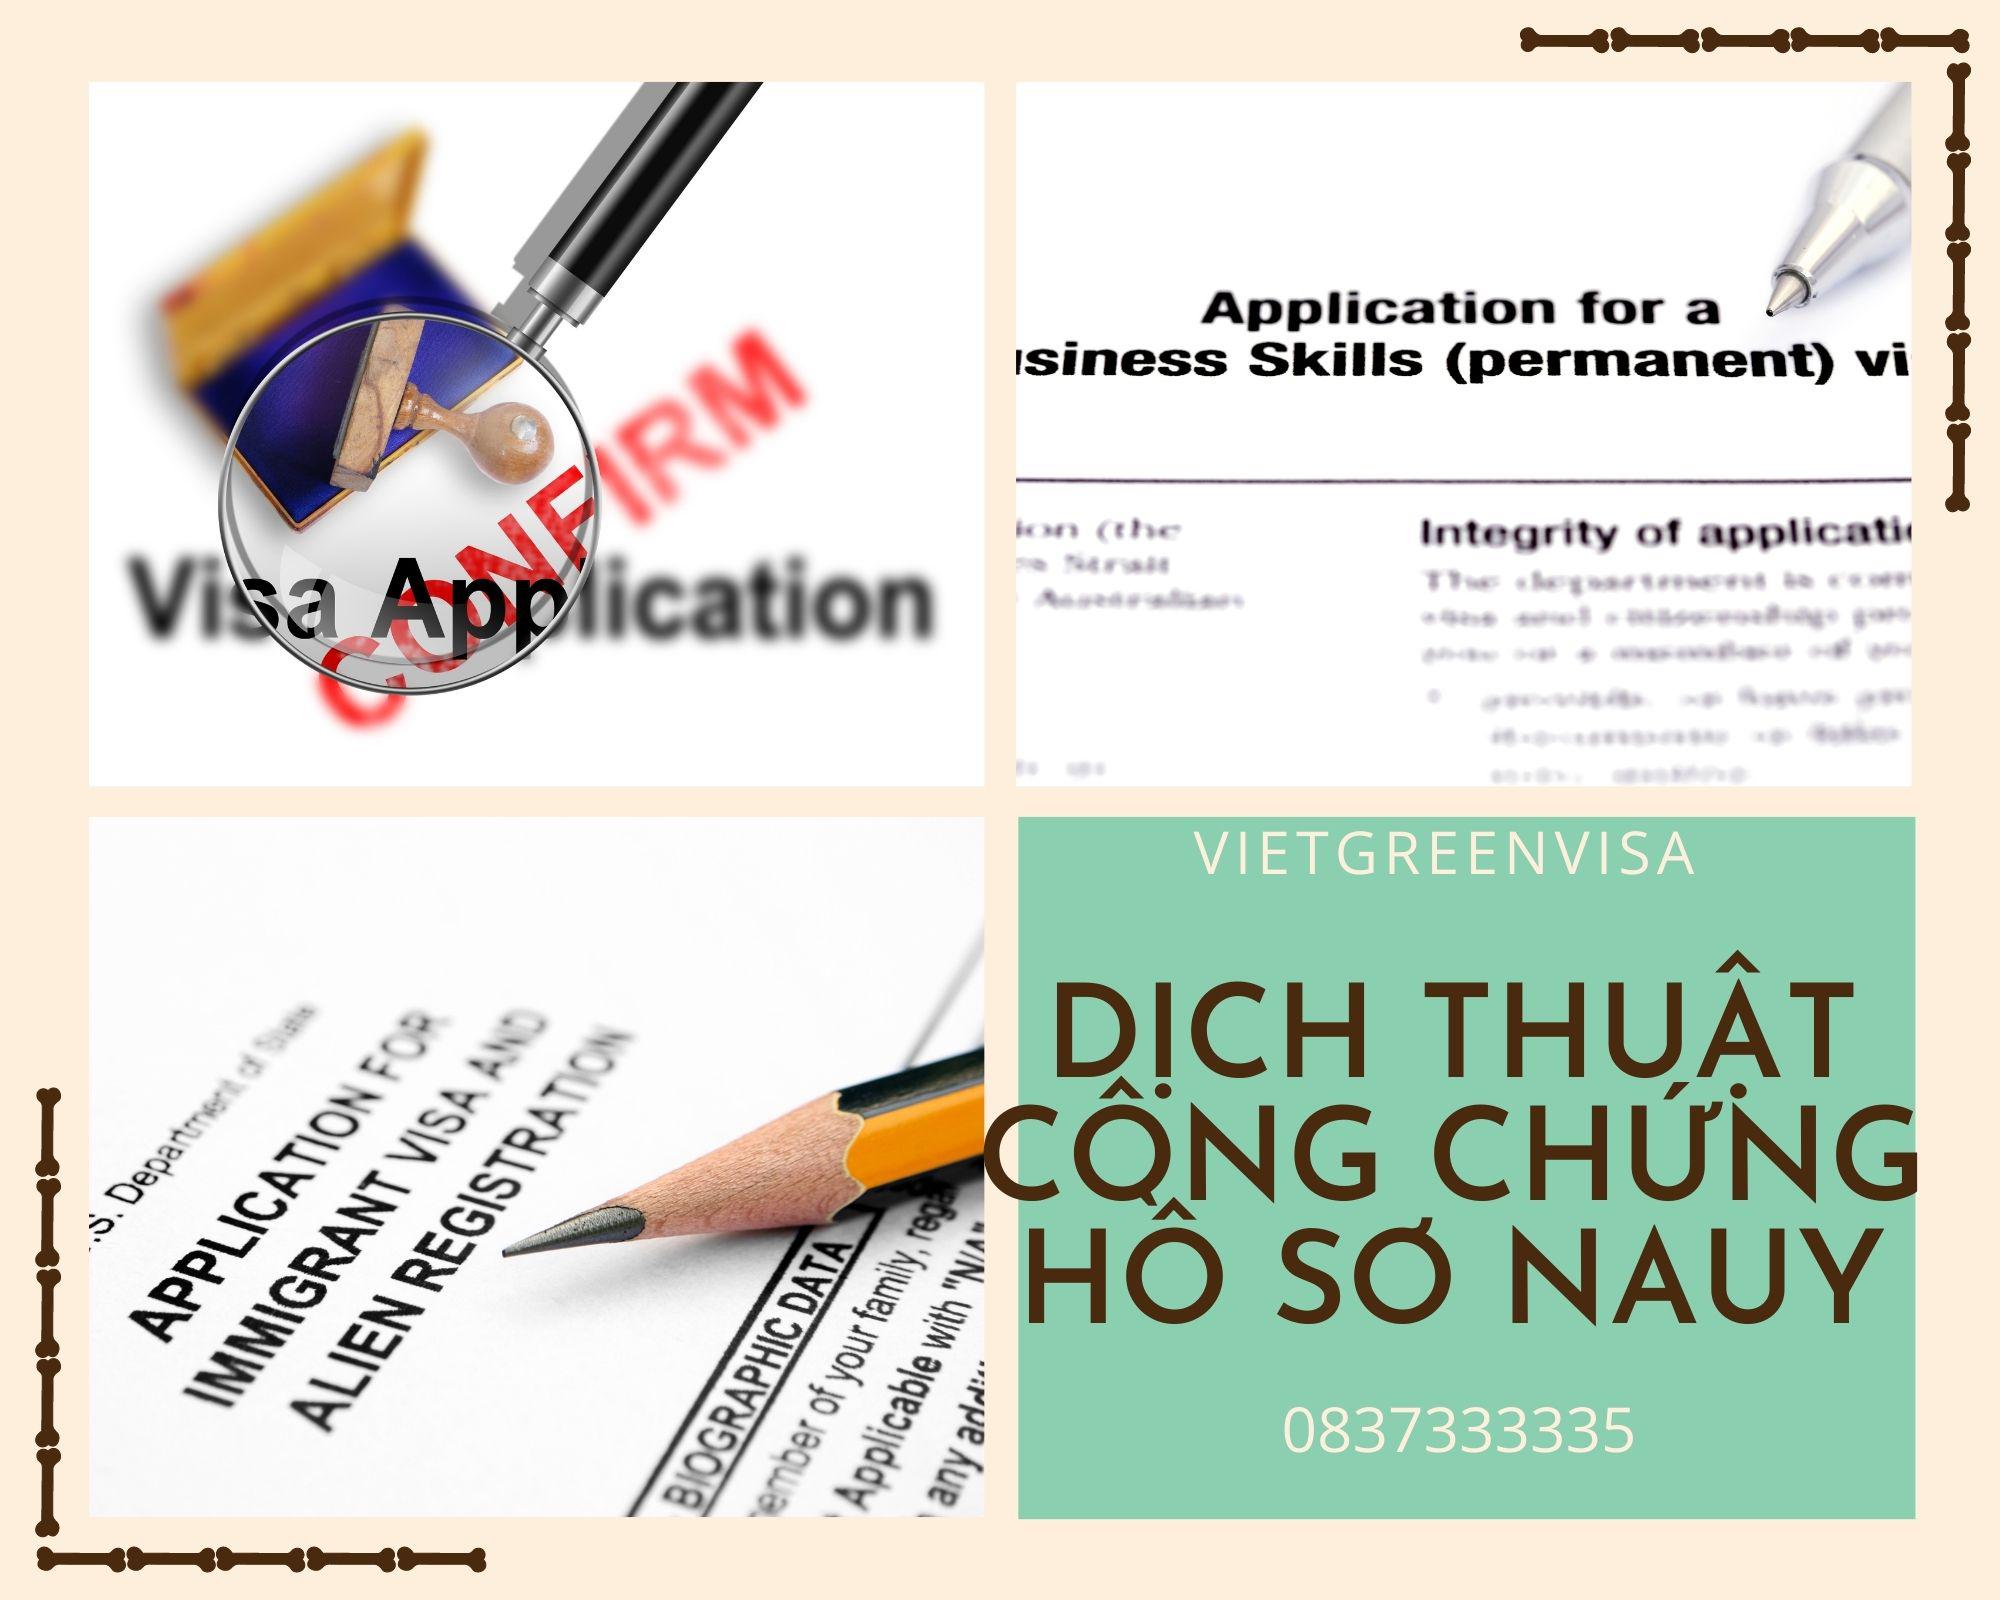 Dịch thuật công chứng hồ sơ visa Nauy nhanh rẻ